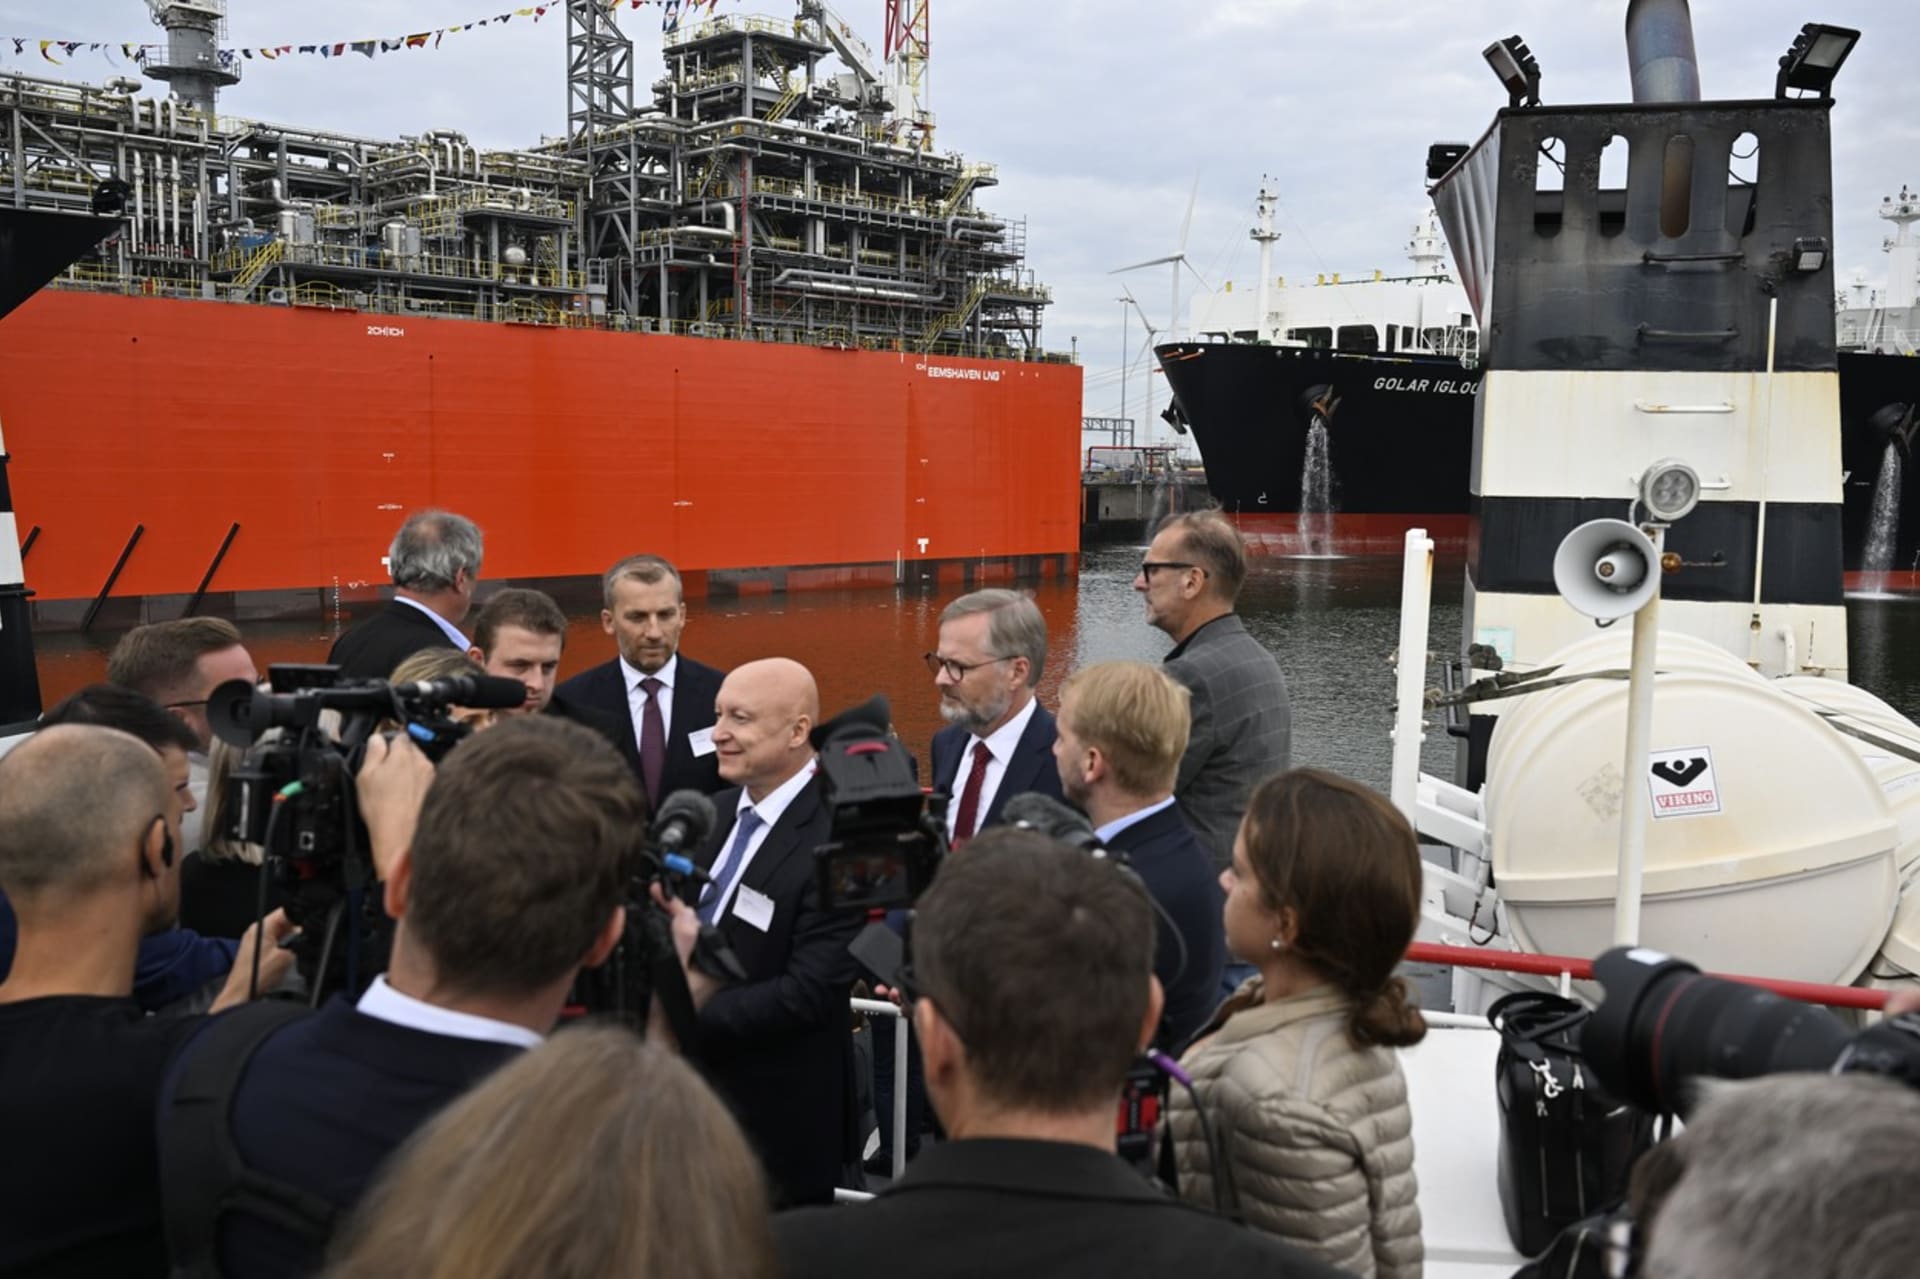 V přístavu Eemshaven v Nizozemsku byl slavnostně otevřen terminál na zkapalněný zemní plyn. Přítomen byl i český premiér Petr Fiala (ODS).